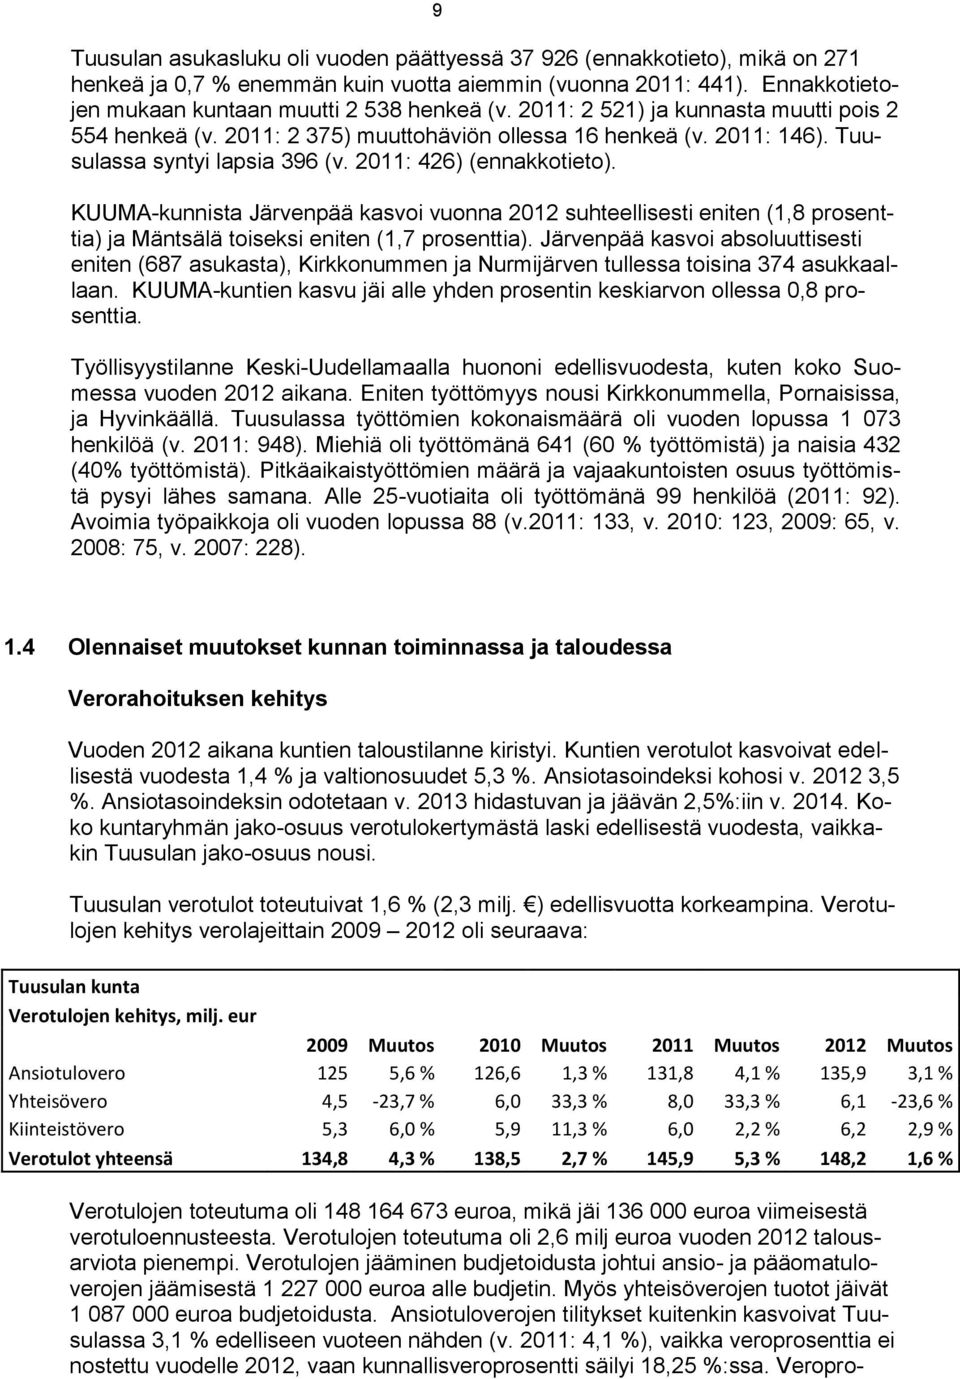 KUUMA-kunnista Järvenpää kasvoi vuonna 2012 suhteellisesti eniten (1,8 prosenttia) ja Mäntsälä toiseksi eniten (1,7 prosenttia).